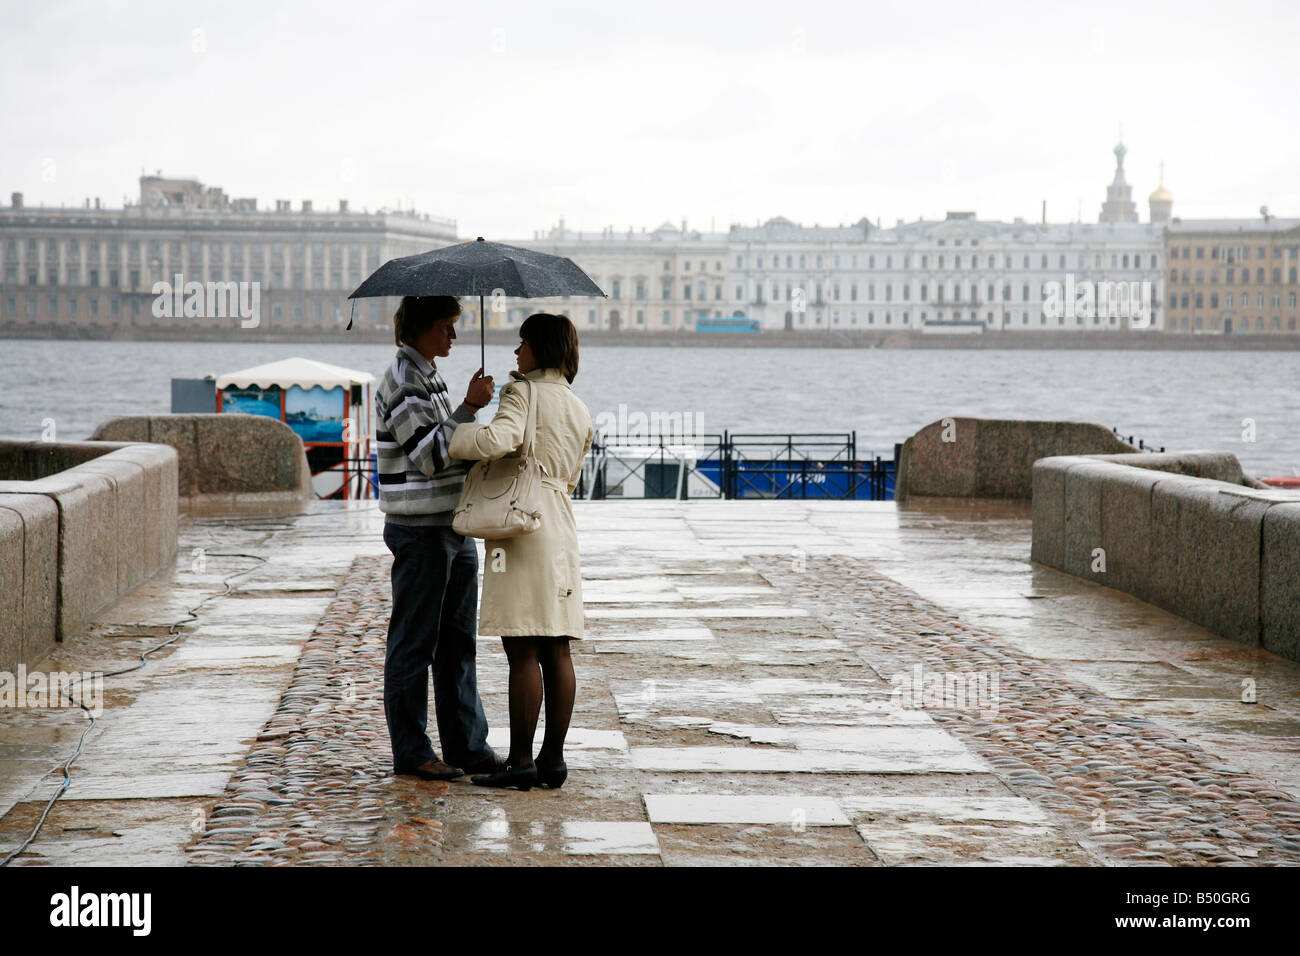 Août 2008 - Couple debout sous un parapluie dans Vaslievskiy island St Petersburg Russia Banque D'Images